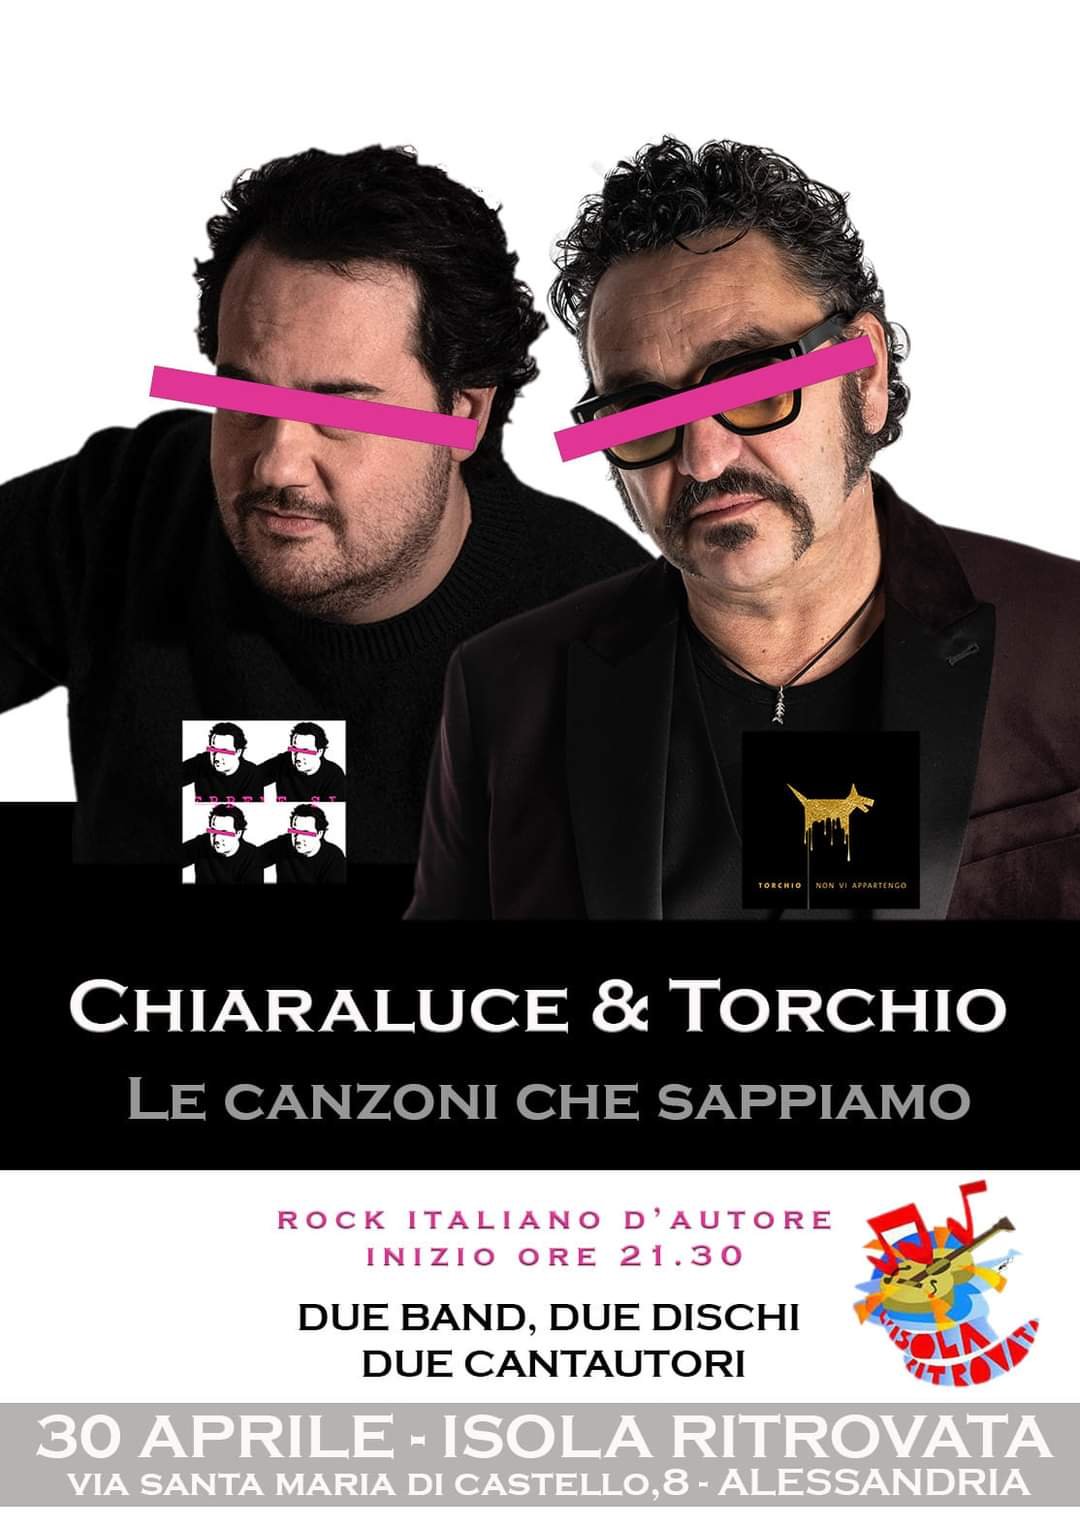 Massimo Torchio e Marcello Chiaraluce live all’Isola Ritrovata